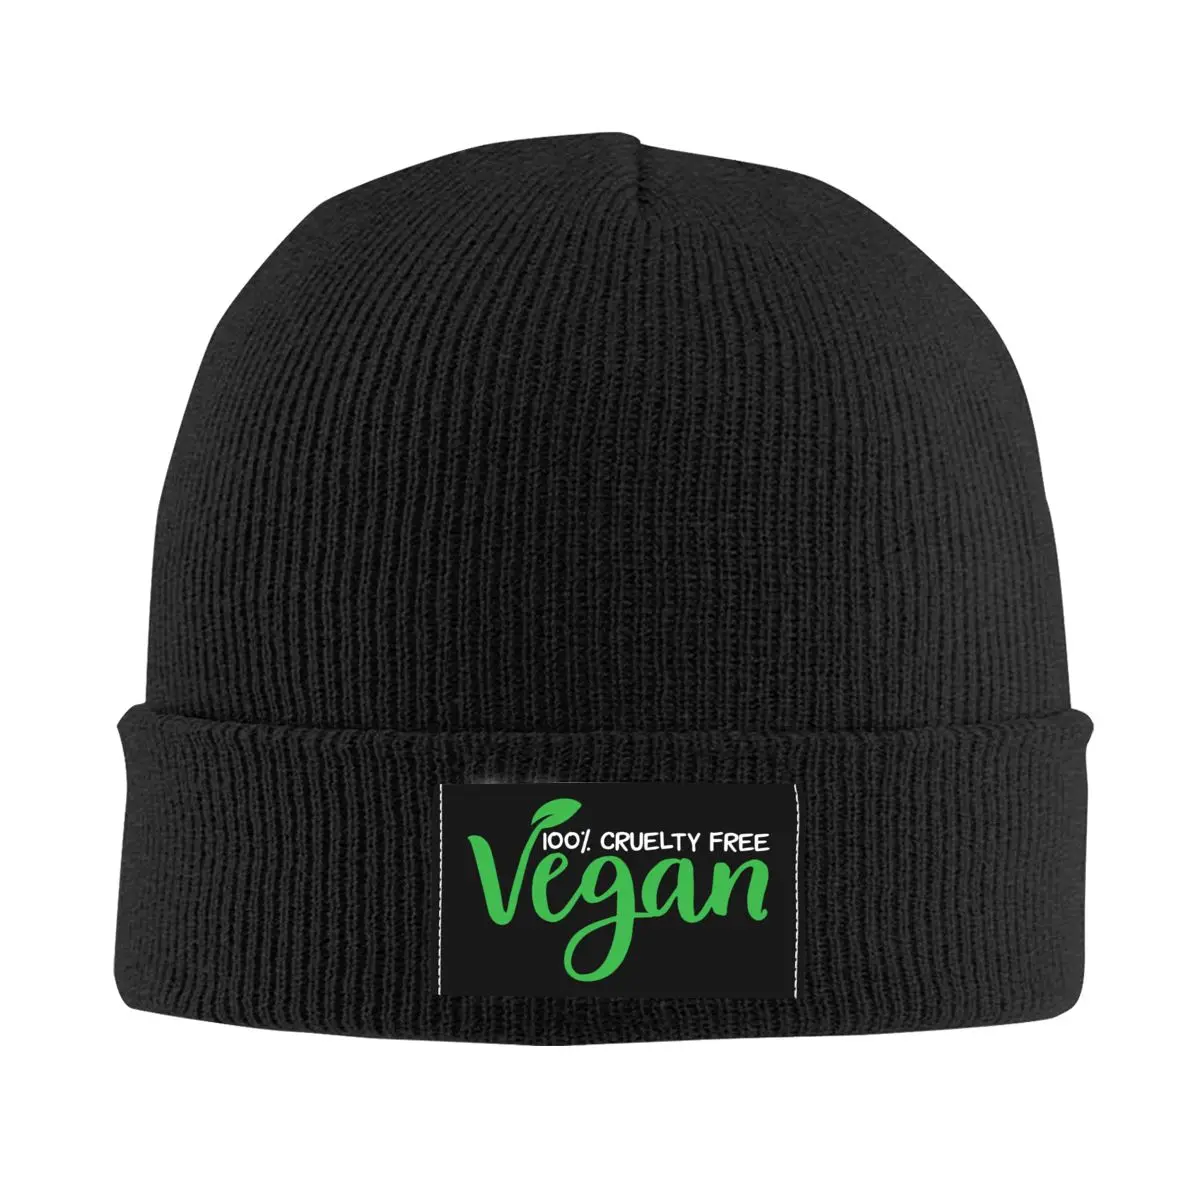 

Vegan Nutrition Skullies Beanies Caps For Men Women Unisex Trend Winter Warm Knitting Hat Veganism Animal Rights Bonnet Hats